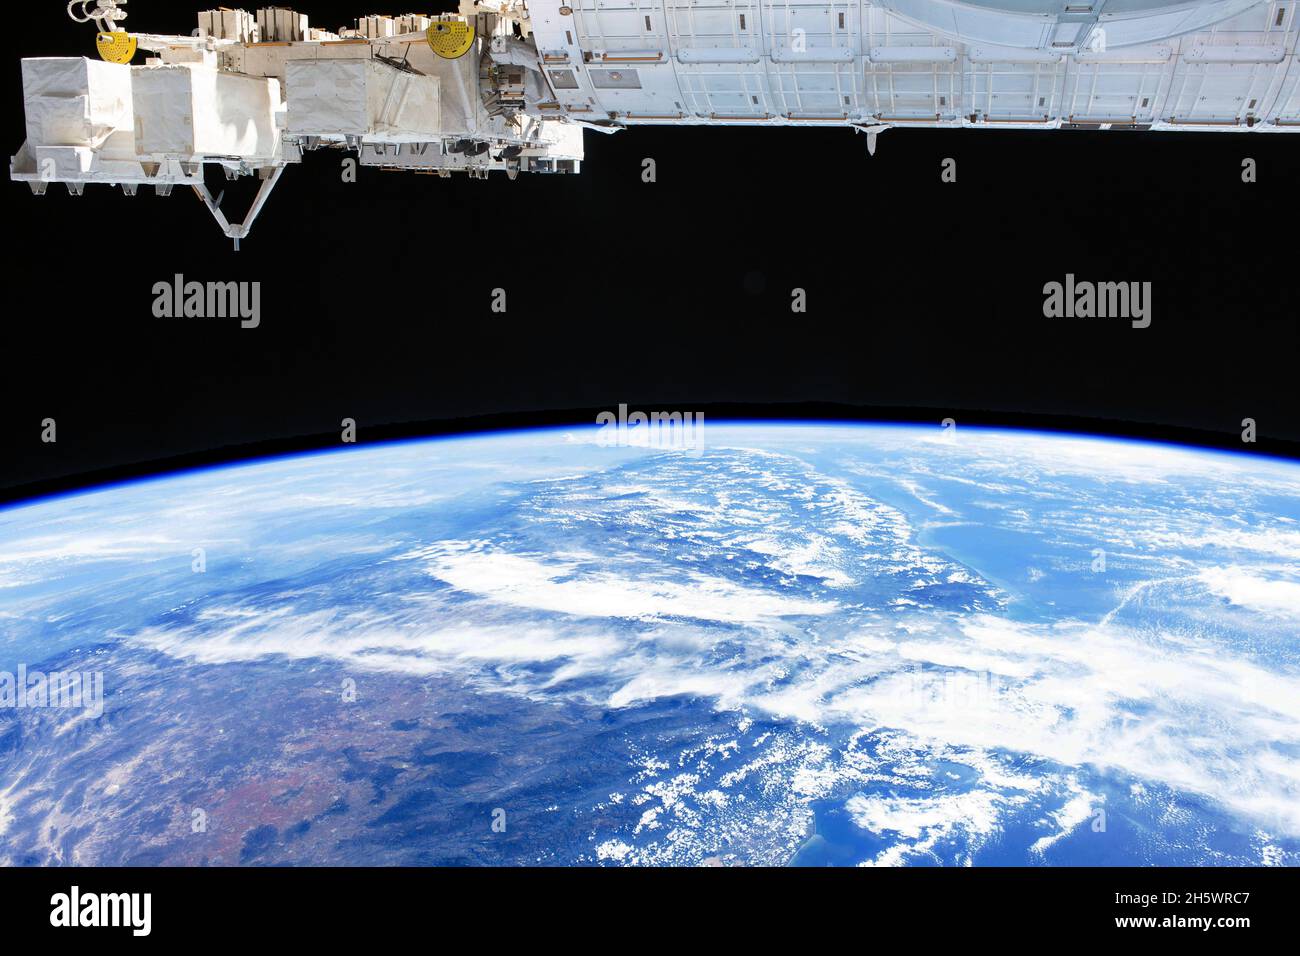 Une vue sur la Terre depuis la Station spatiale internationale : la côte californienne / le golfe de Californie.27 octobre 2021 une version optimisée et numériquement améliorée d'une image de la NASA. Banque D'Images